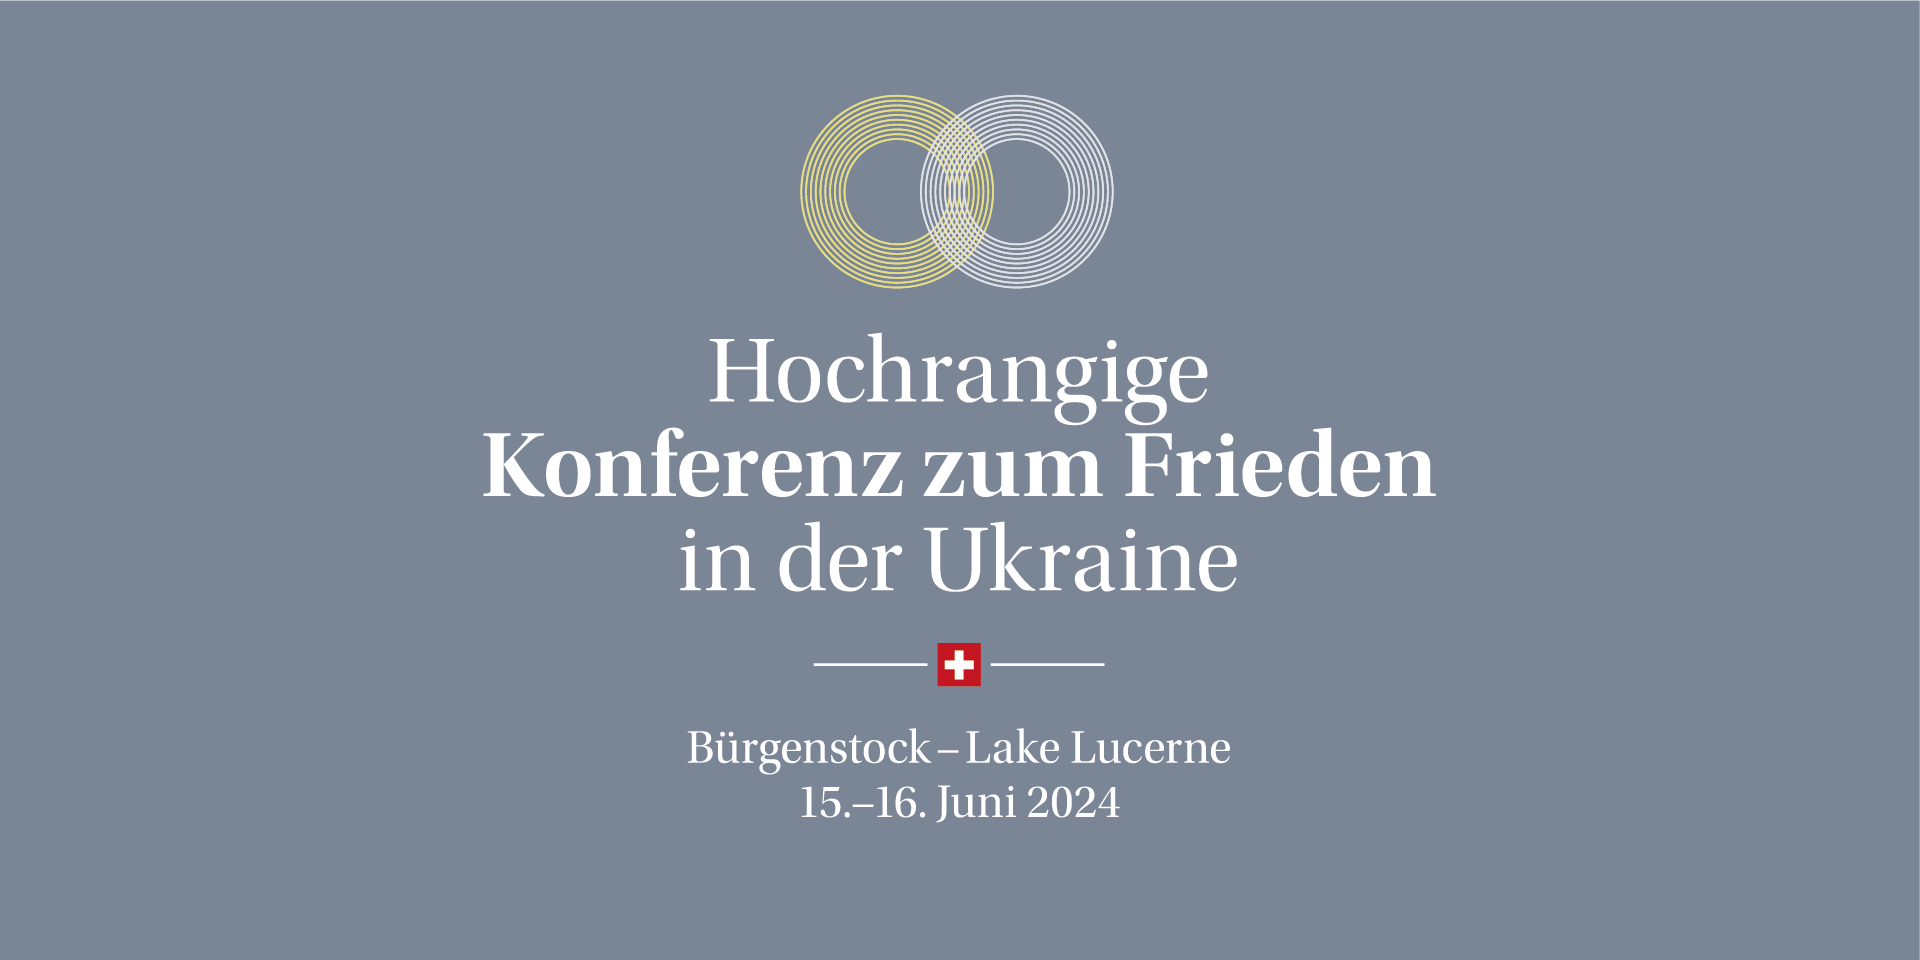 Das Logo der hochrangigen Konferenz zum Frieden in der Ukraine, Bürgenstock - Lake Lucerne, 15.-16. Juni 2024.